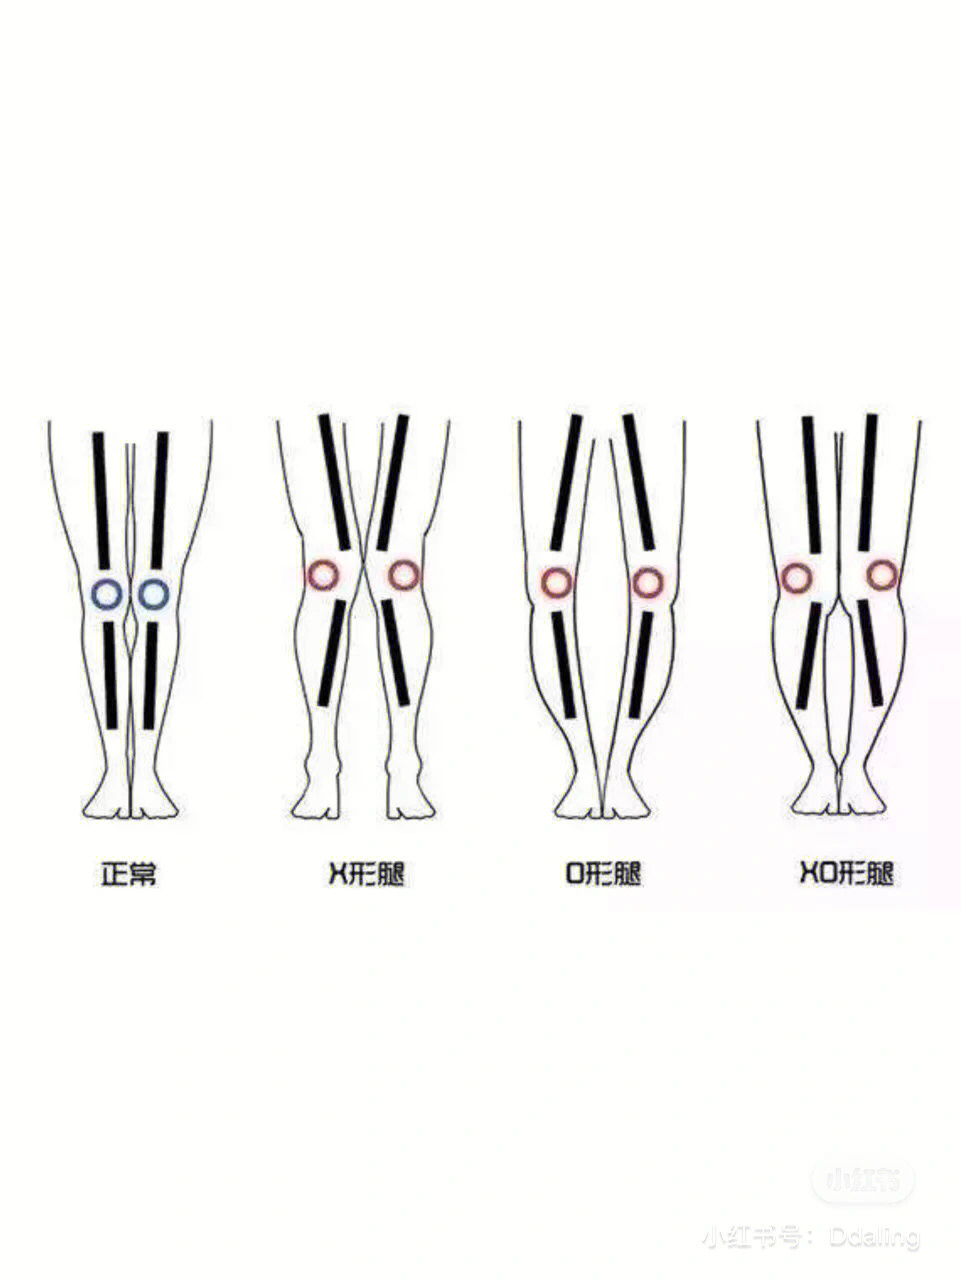 xo型腿形成原因图解图片